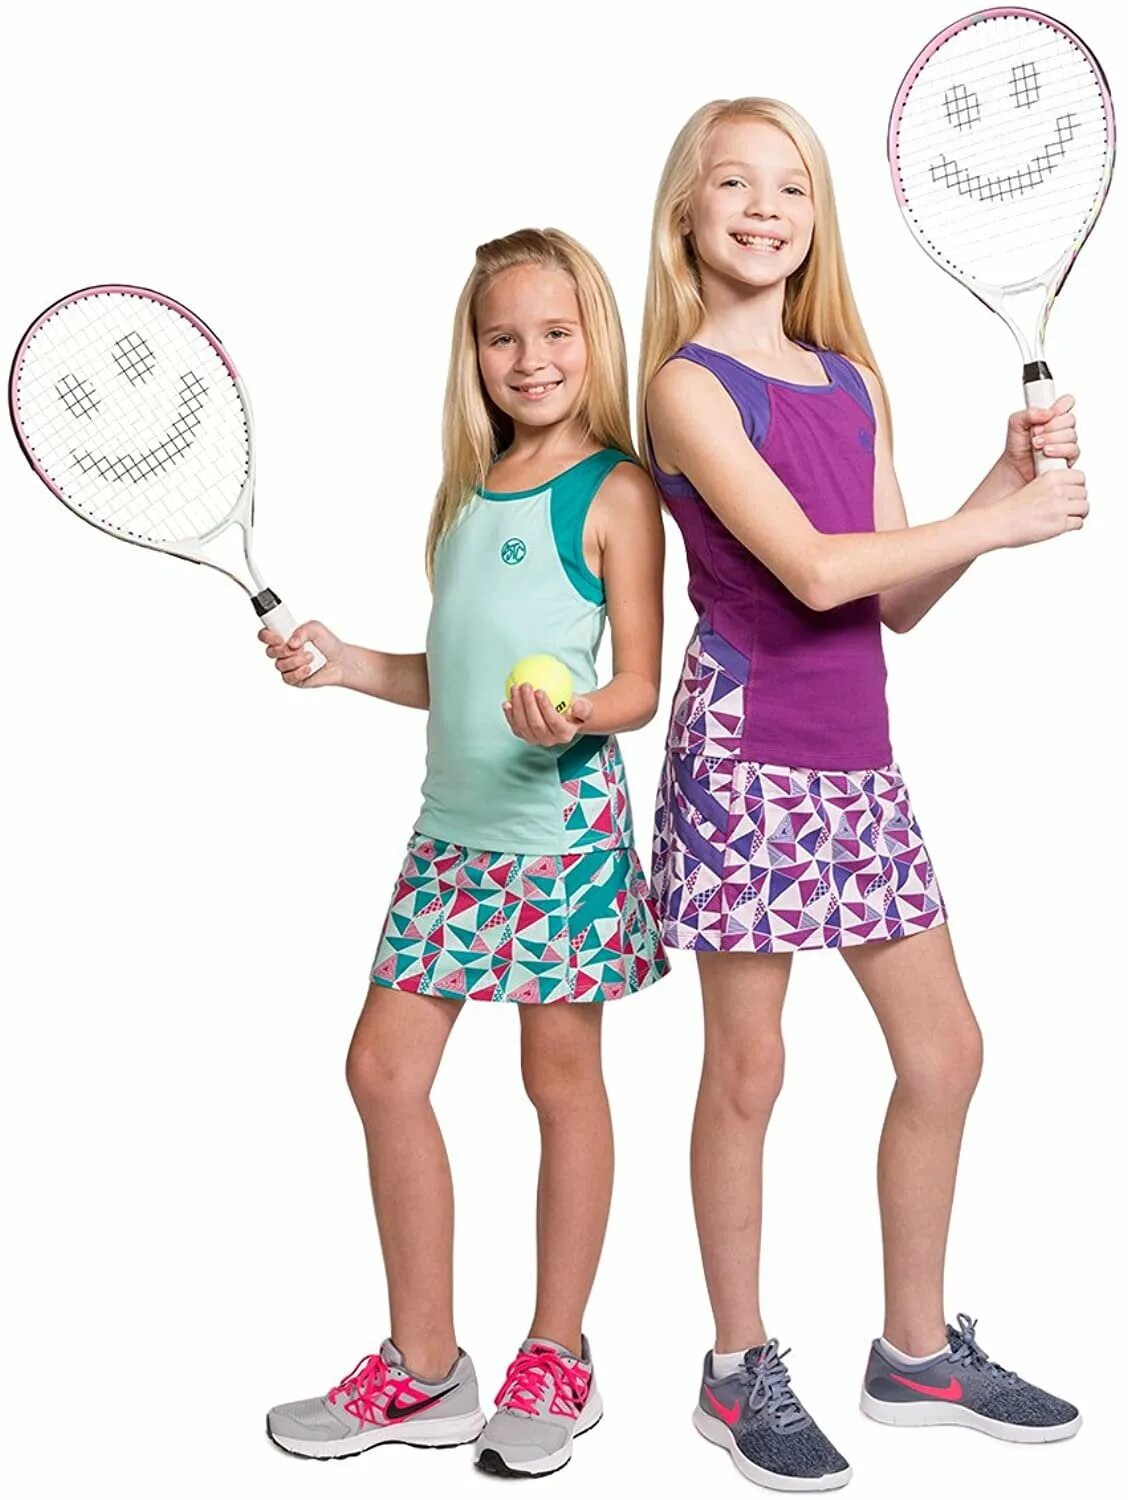 I like little girls. Теннис дети. Одежда играющих в теннис детей. Фотосессия теннис с дочкой. Теннис 10s дети.